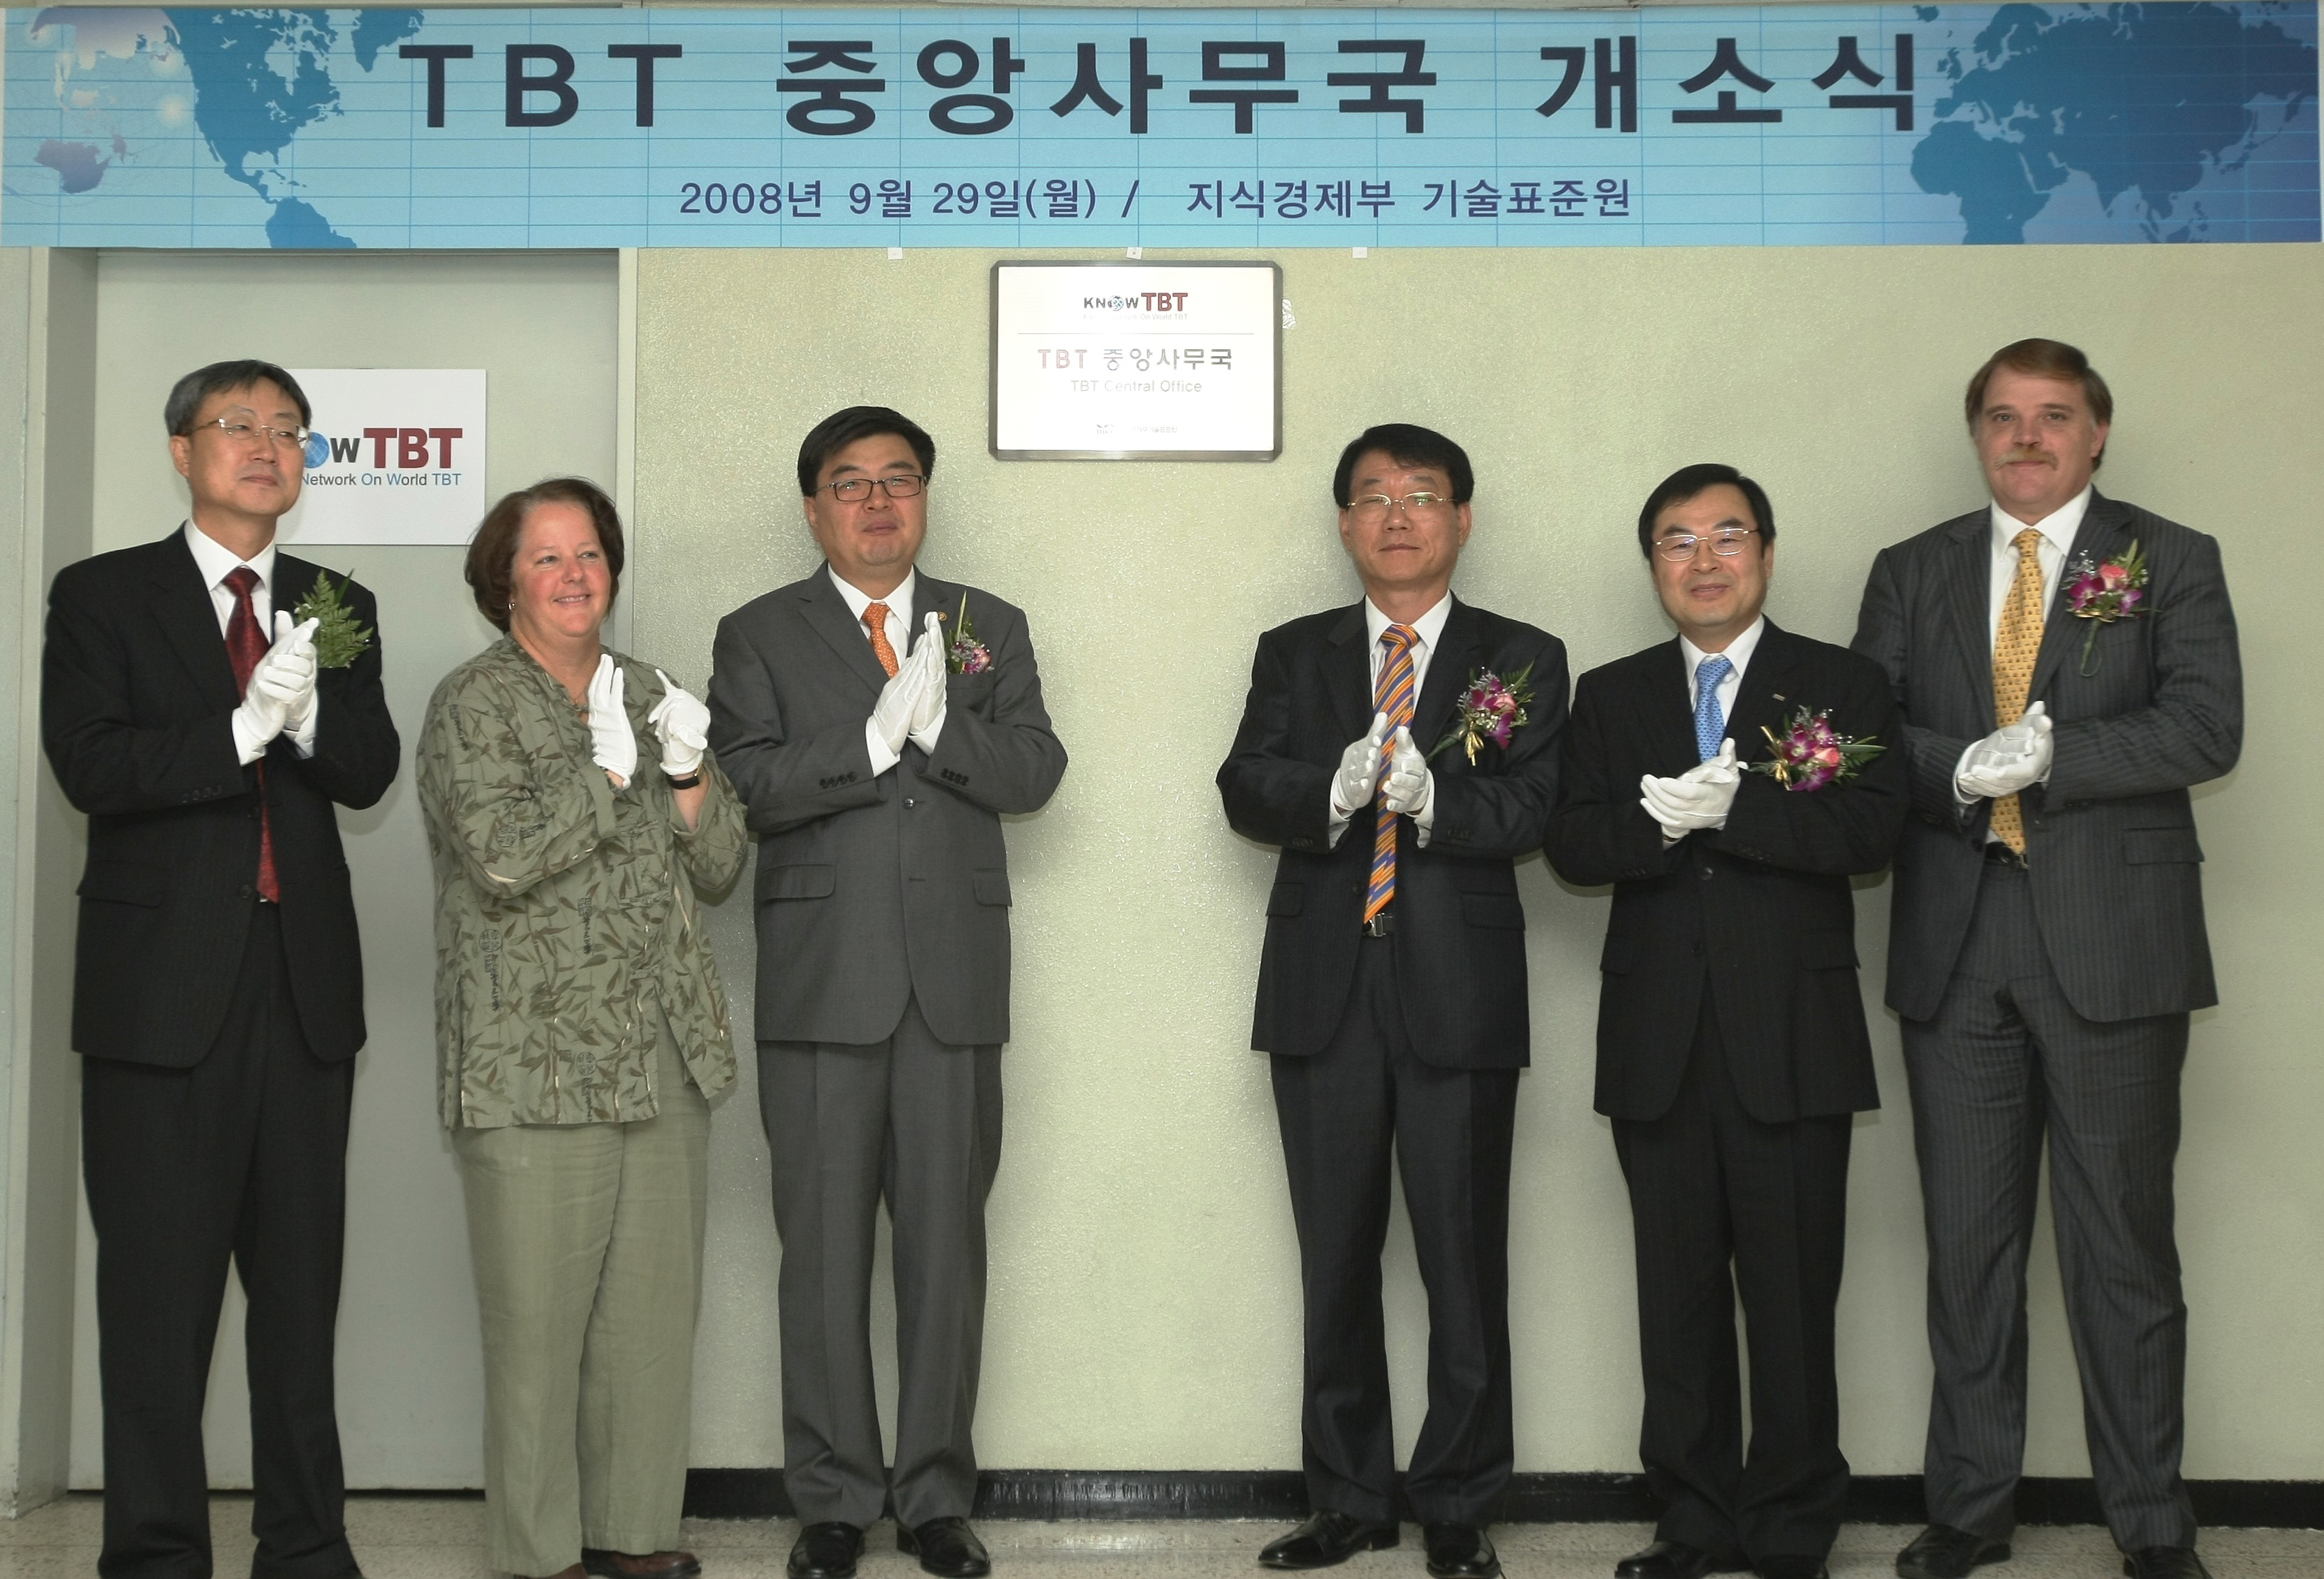 'TBT 중앙사무국 개소식' 현판 제막식(2008.9.29월, 기술표준원)